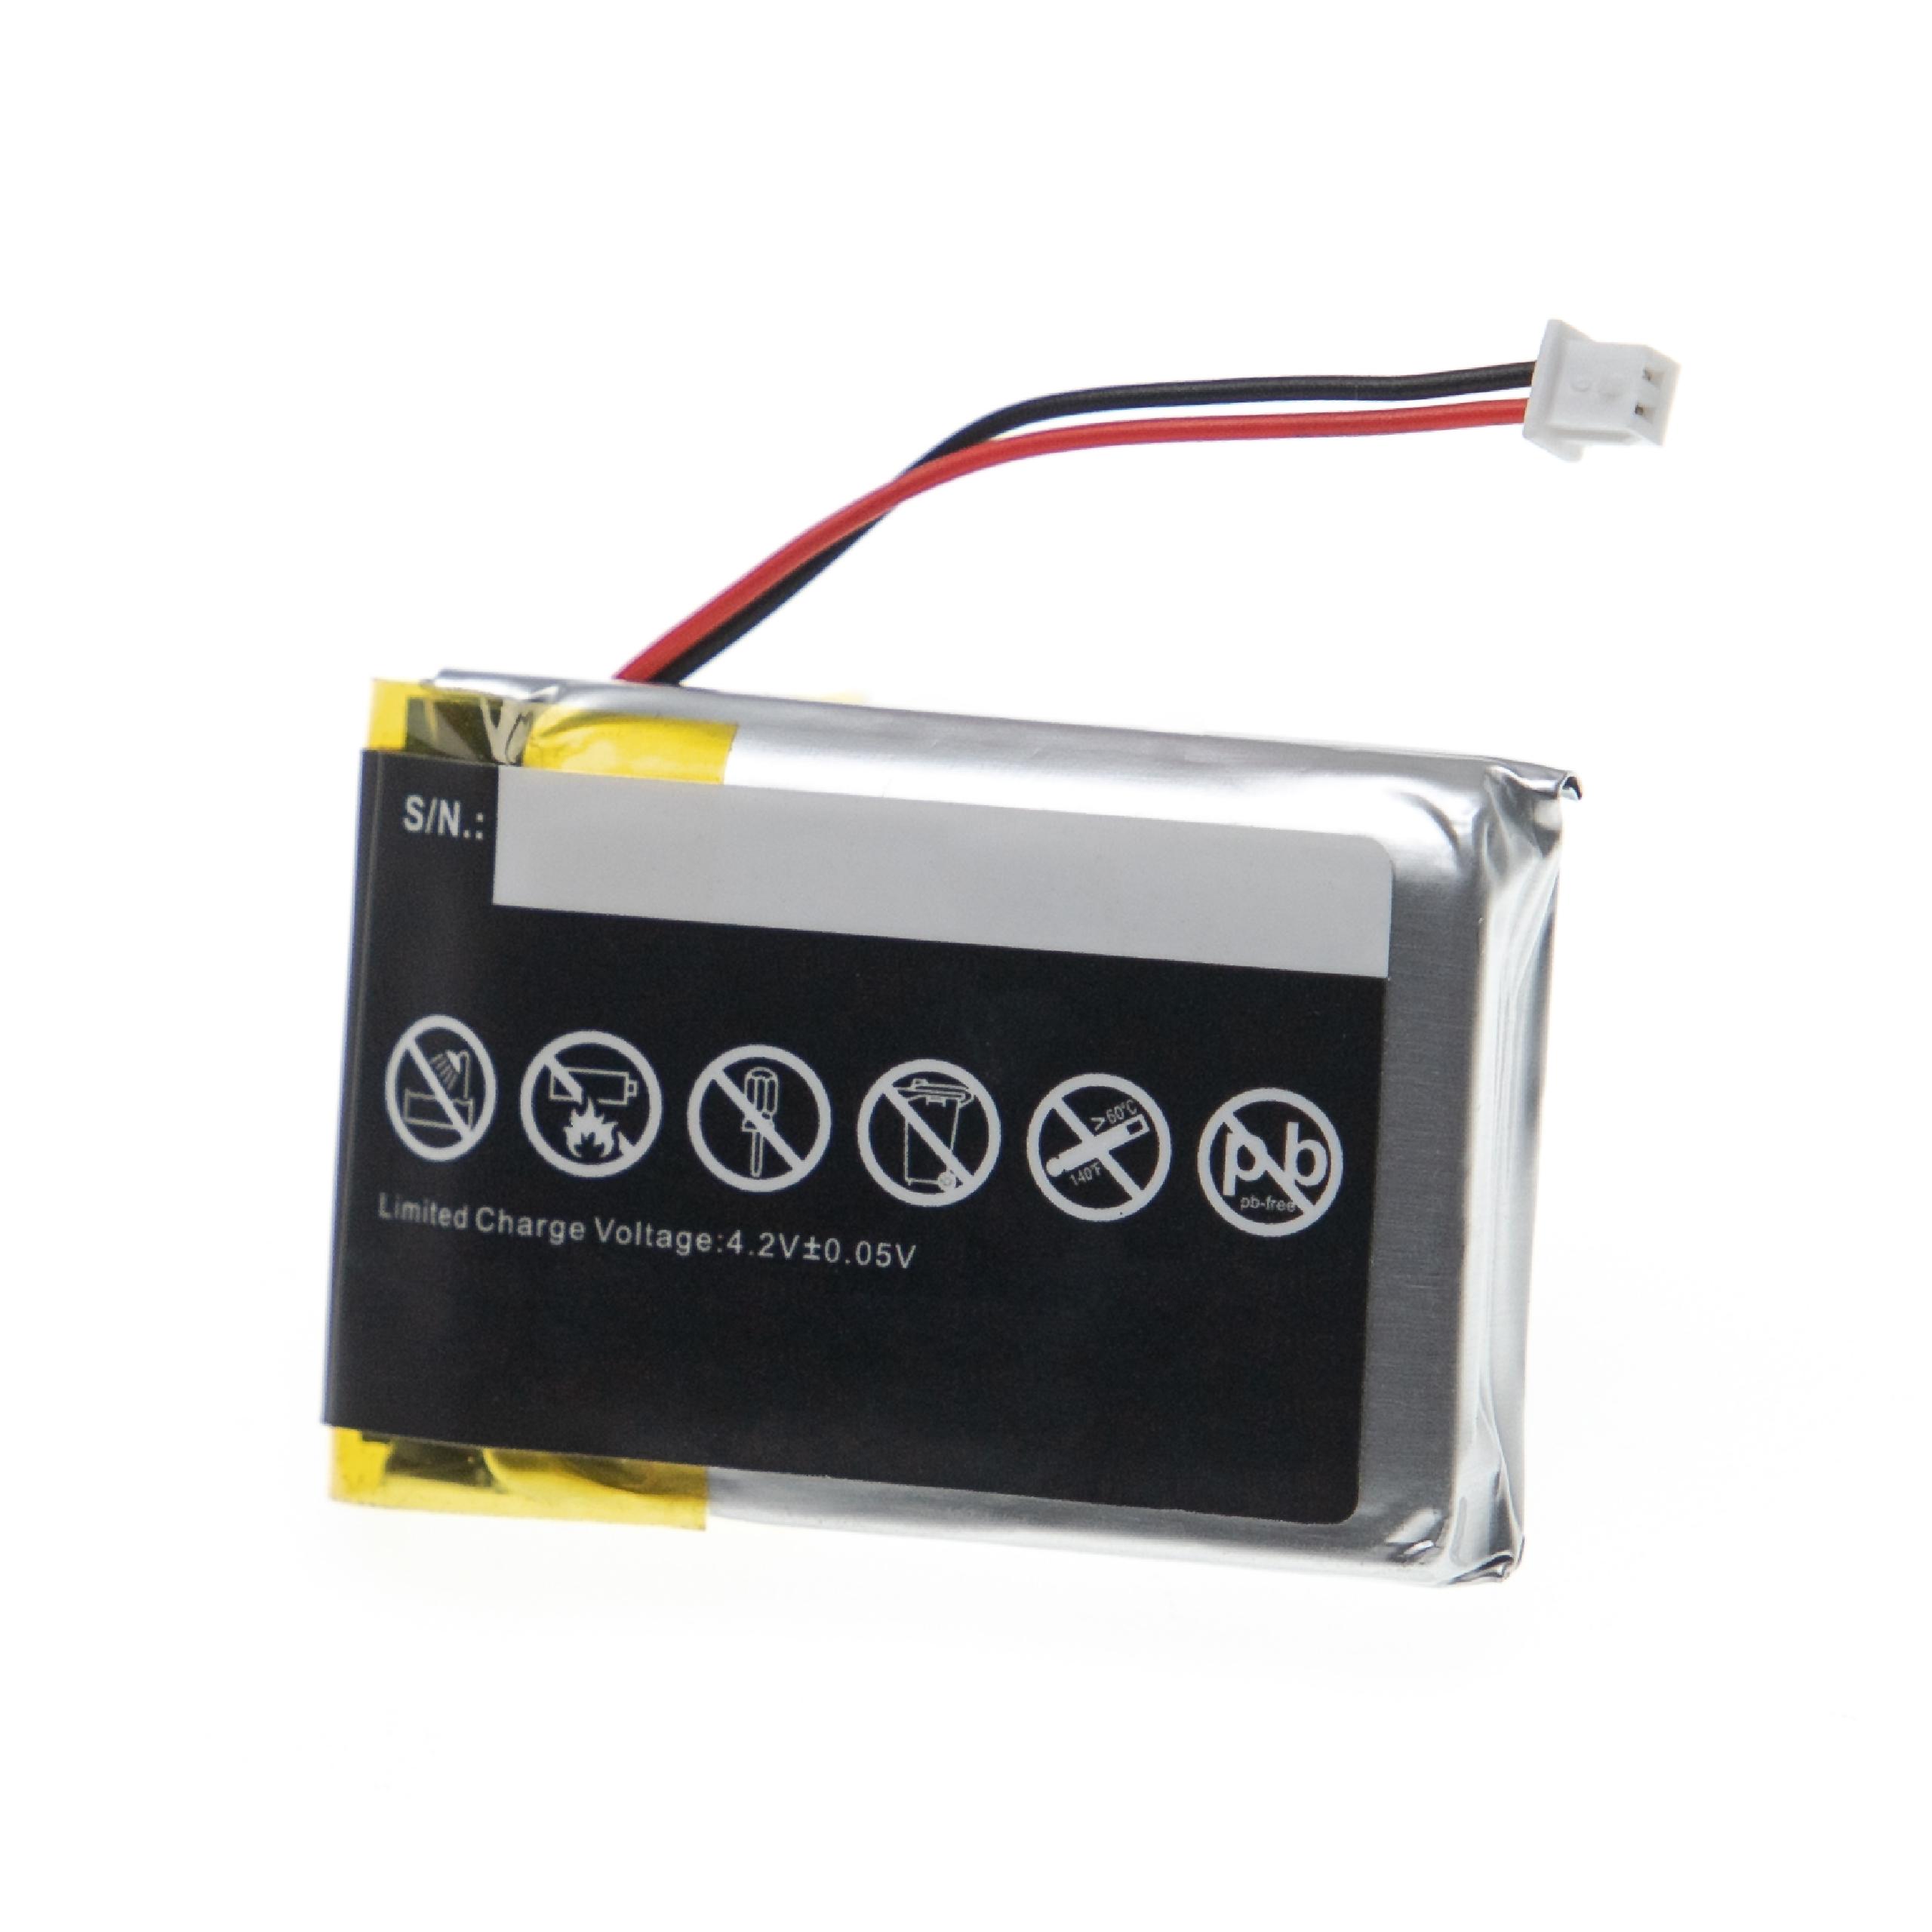 Akumulator do lupy elektronicznej zamiennik Schweizer PL903040 - 1100 mAh 3,7 V LiPo